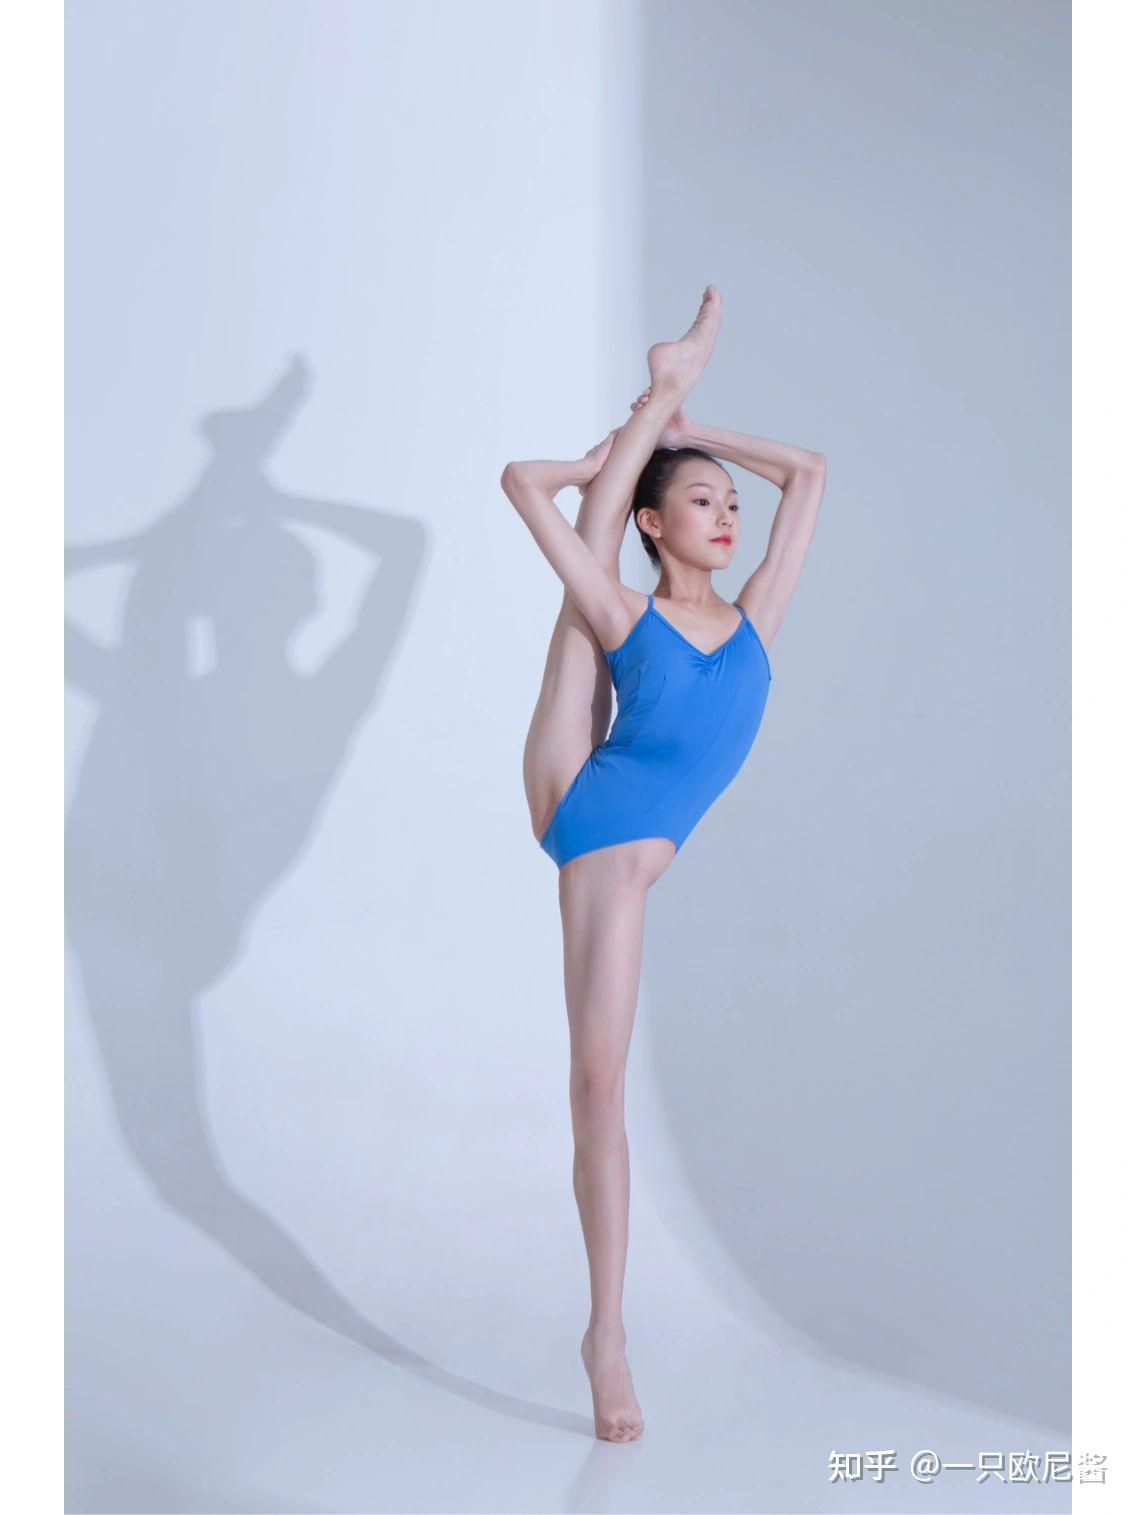 国外FLEXSHOE芭蕾柔术小姐姐瑜伽紧身装一字马软开度展示_哔哩哔哩_bilibili